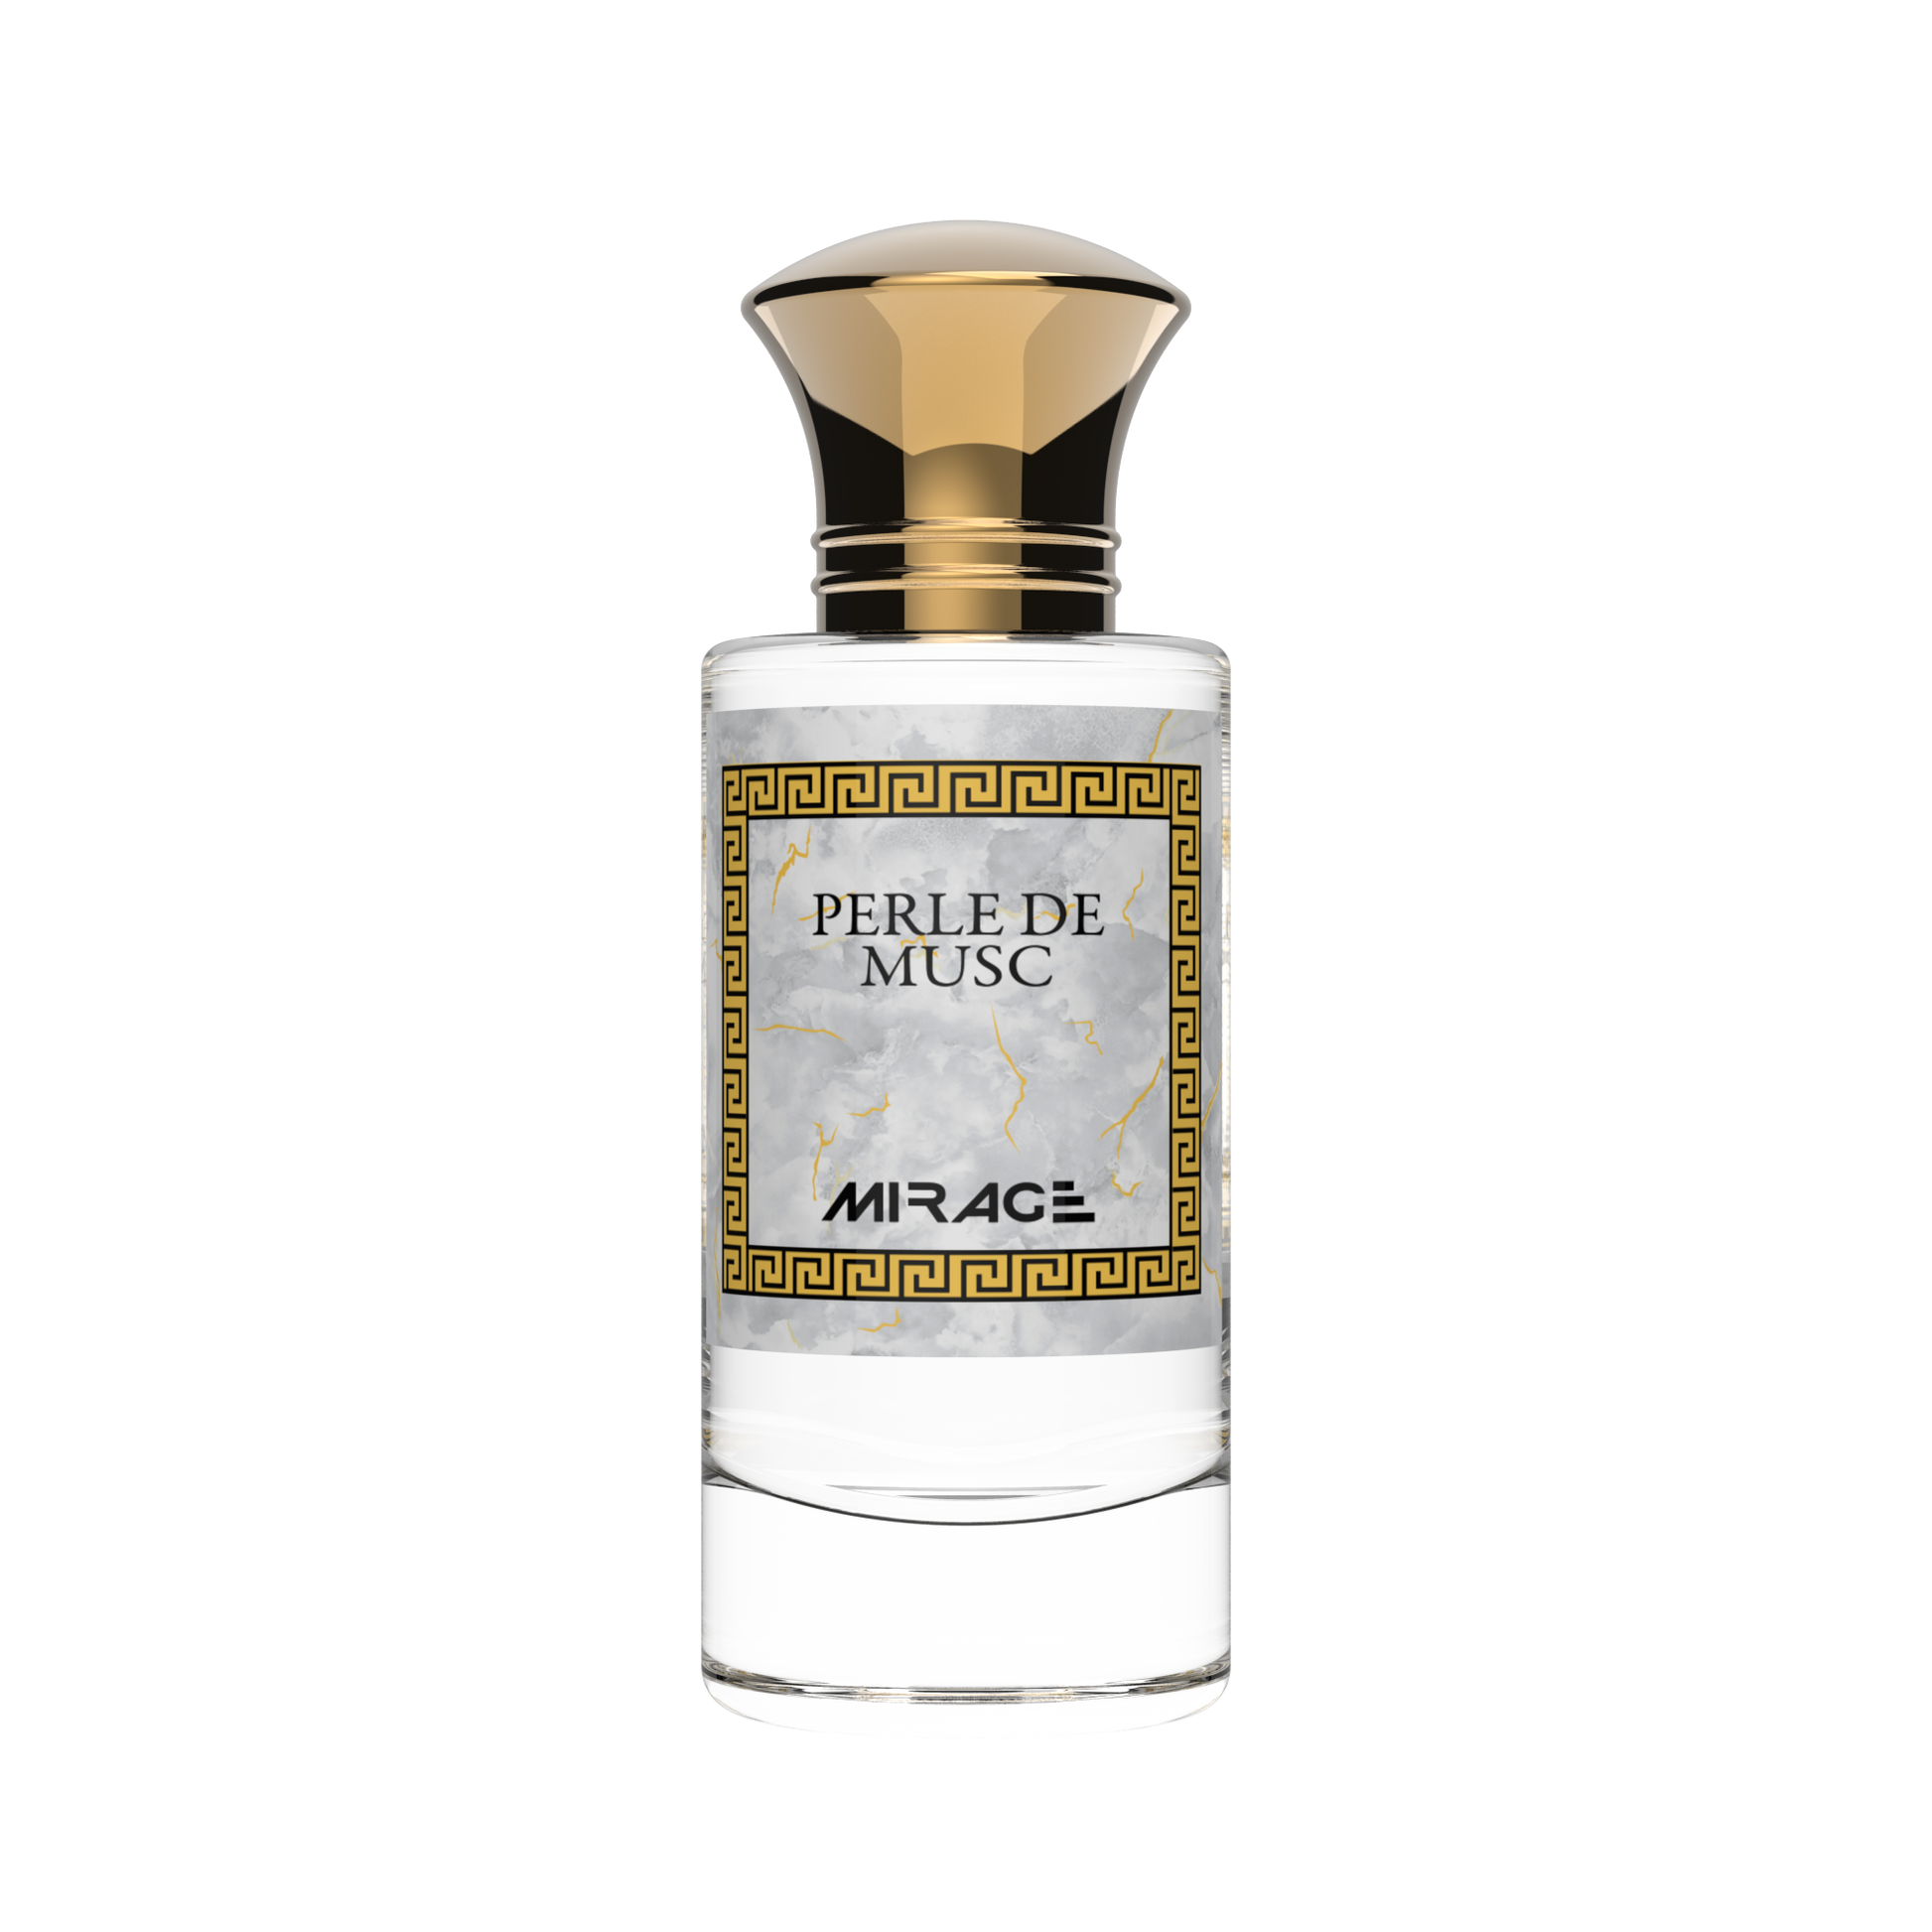 Parfect - Parfumerie Mirage - Parfums orientaux - Parfums perle de musc - parfum cotton frais sucré frais et crémeux